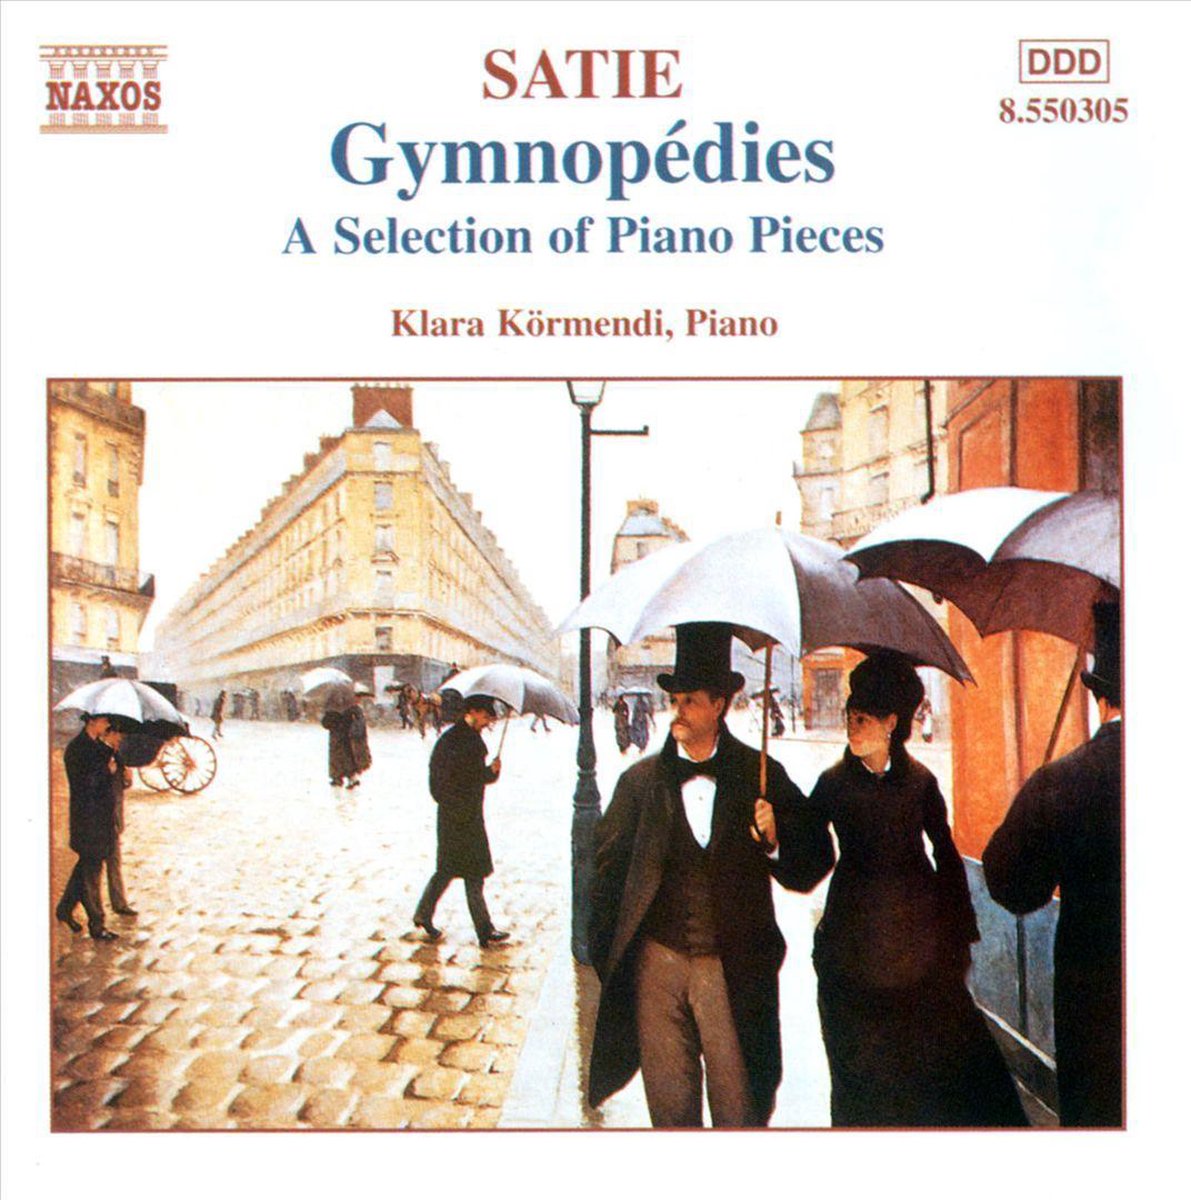 Satie: Gymnopedies | Eric Satie image